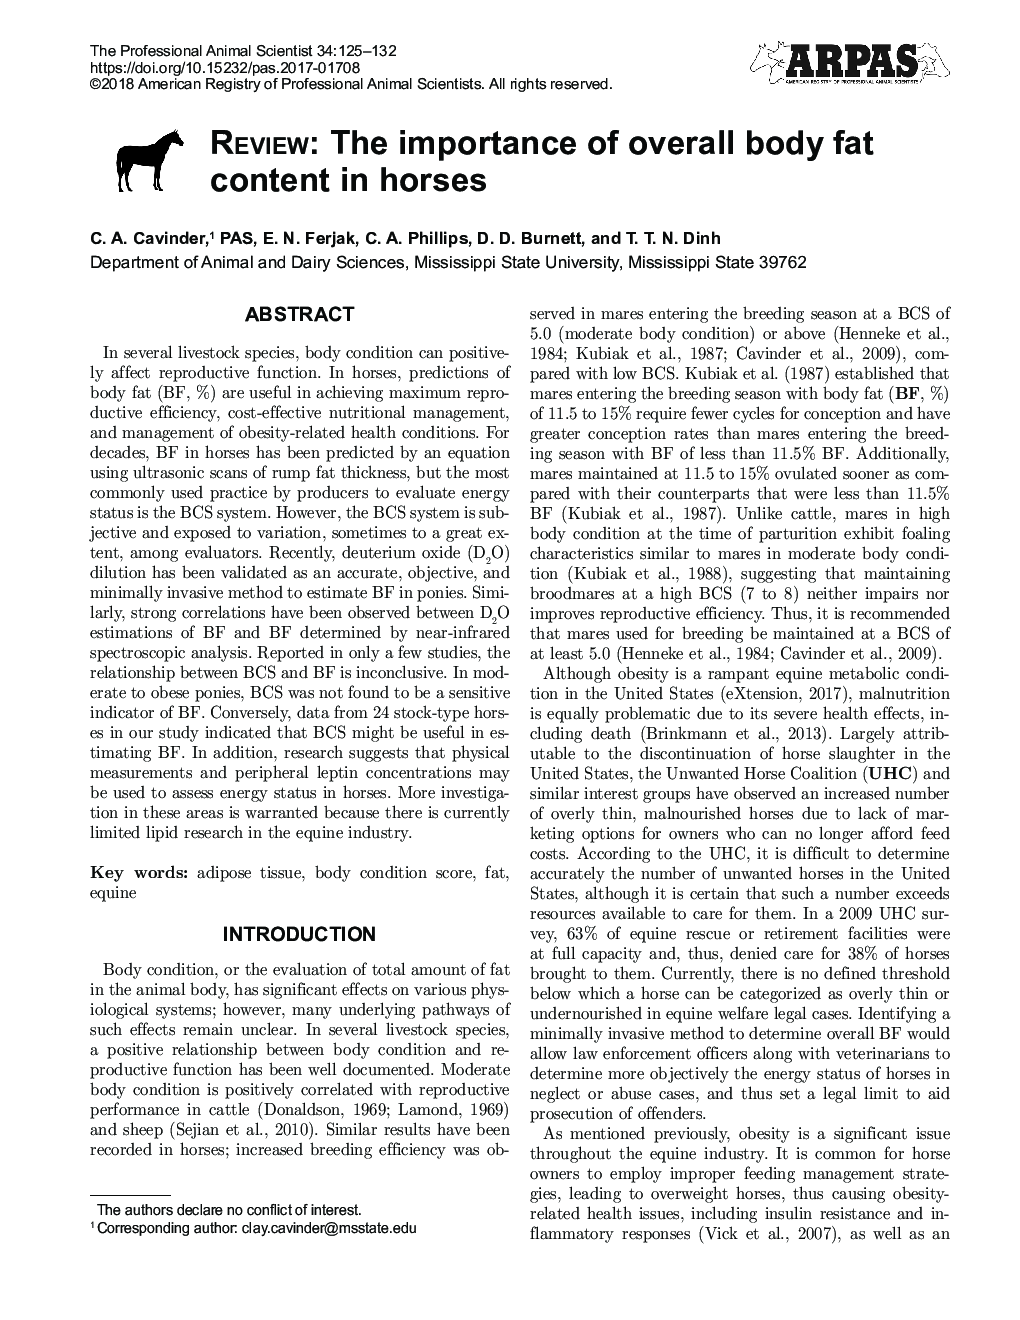 نقد: اهمیت محتوای کلی چربی بدن در اسب ها 